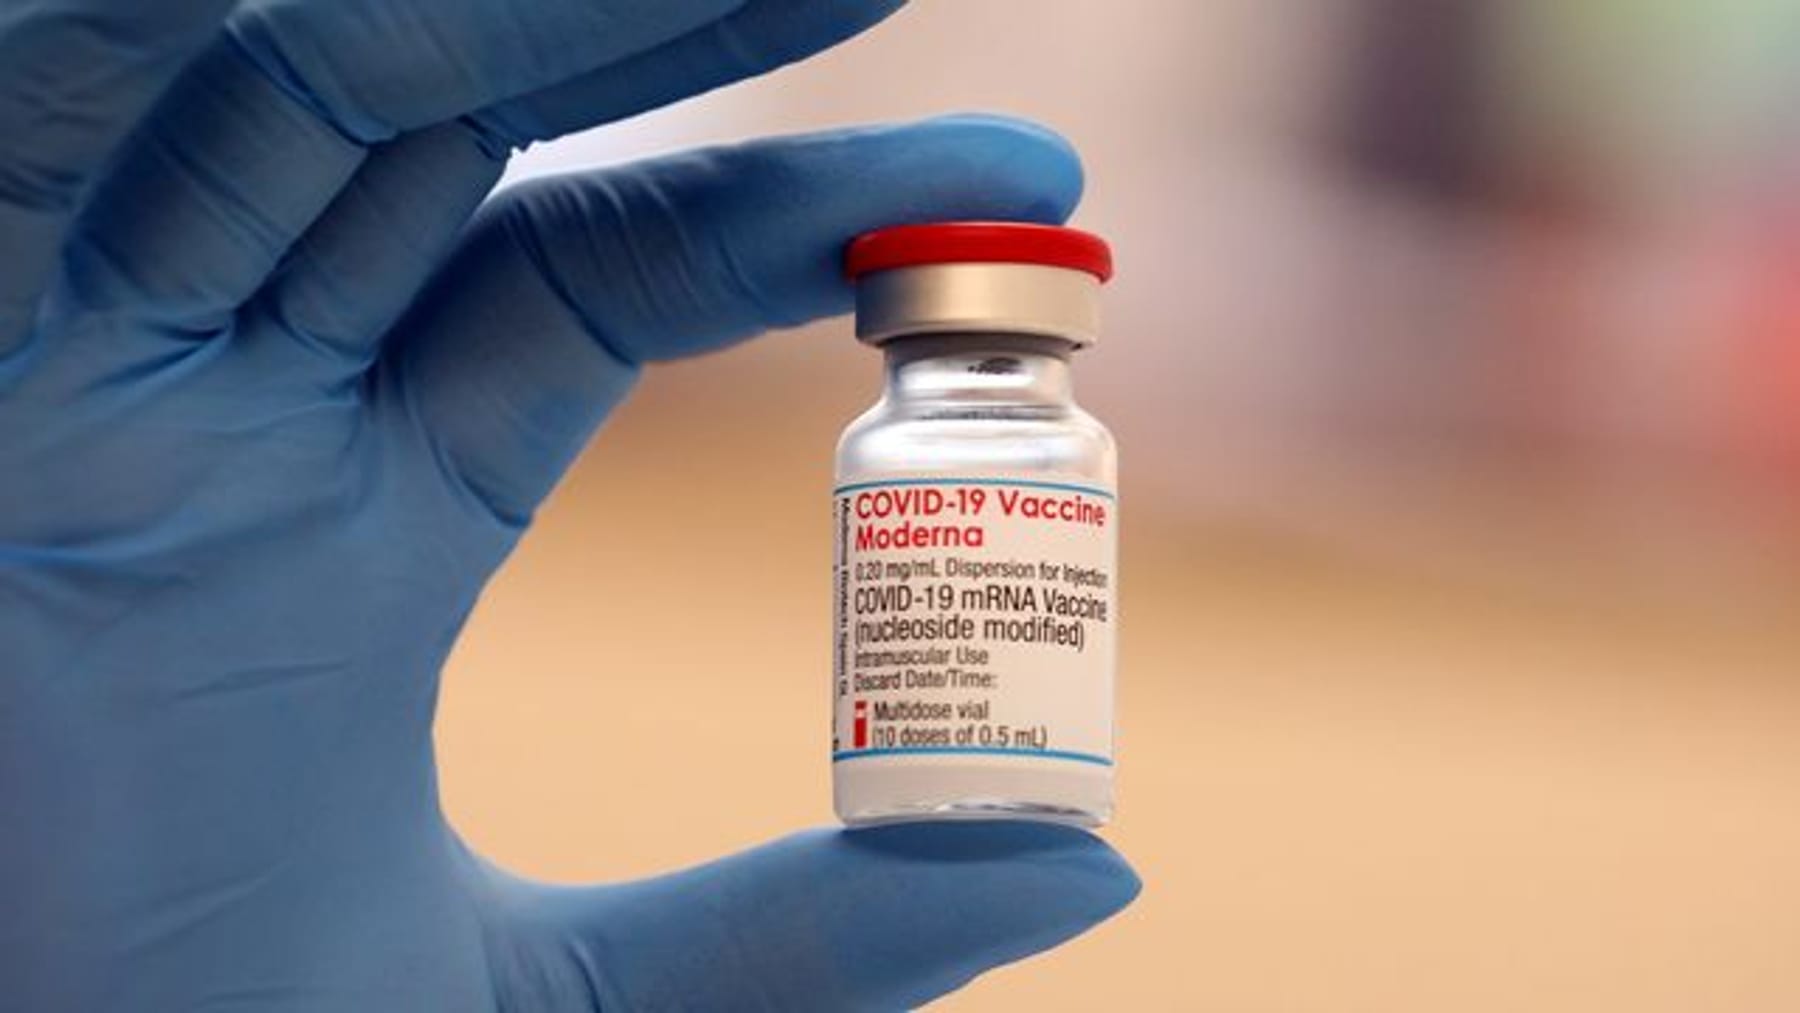 La empresa que fabrica la vacuna Corona, Moderna, sufre pérdidas multimillonarias